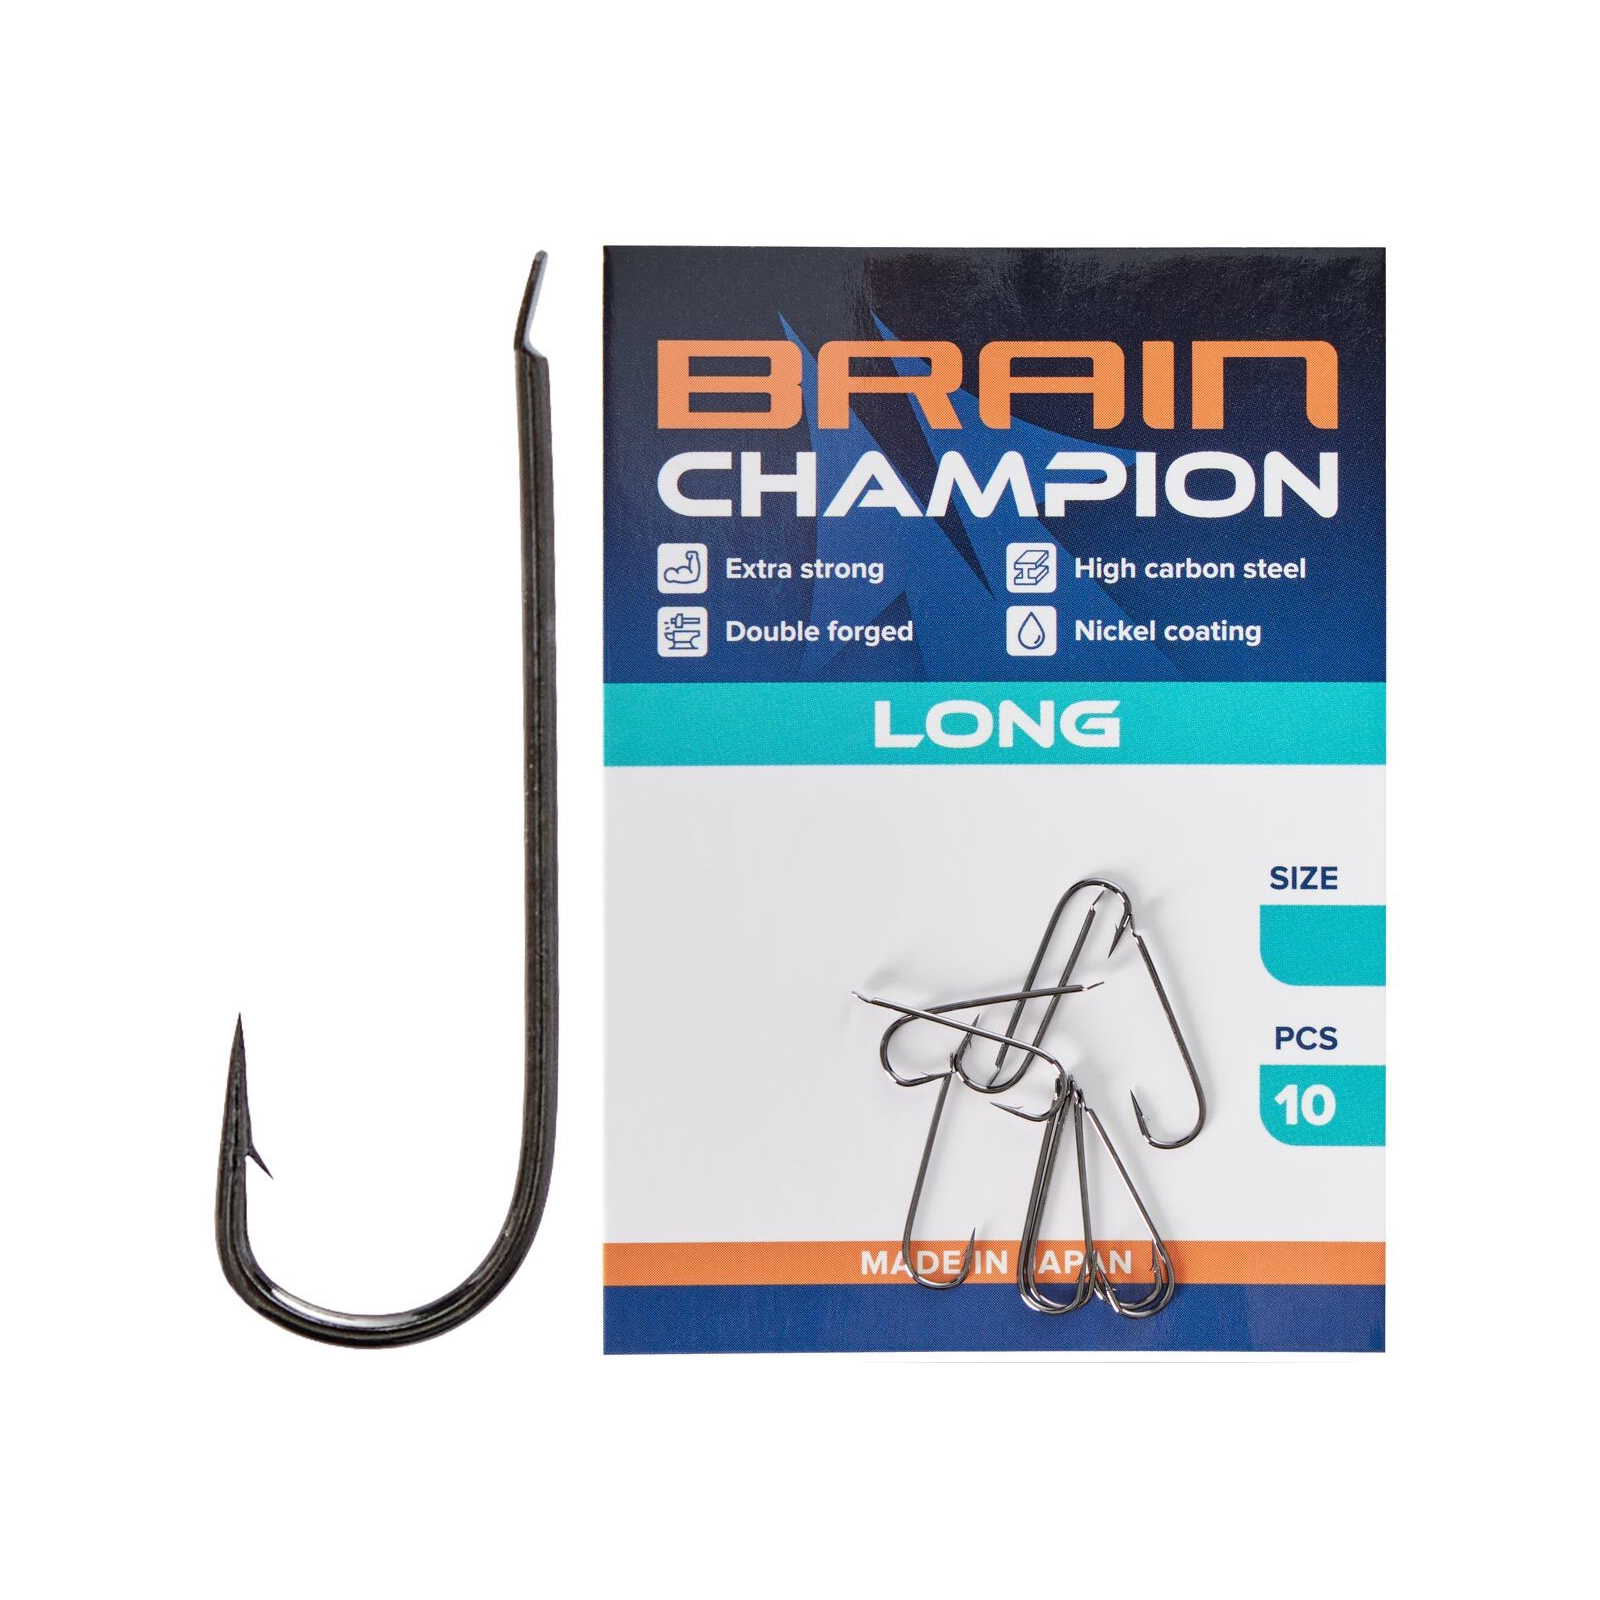 Крючок Brain fishing Champion Long 6 (10 шт/уп) (1858.54.65)